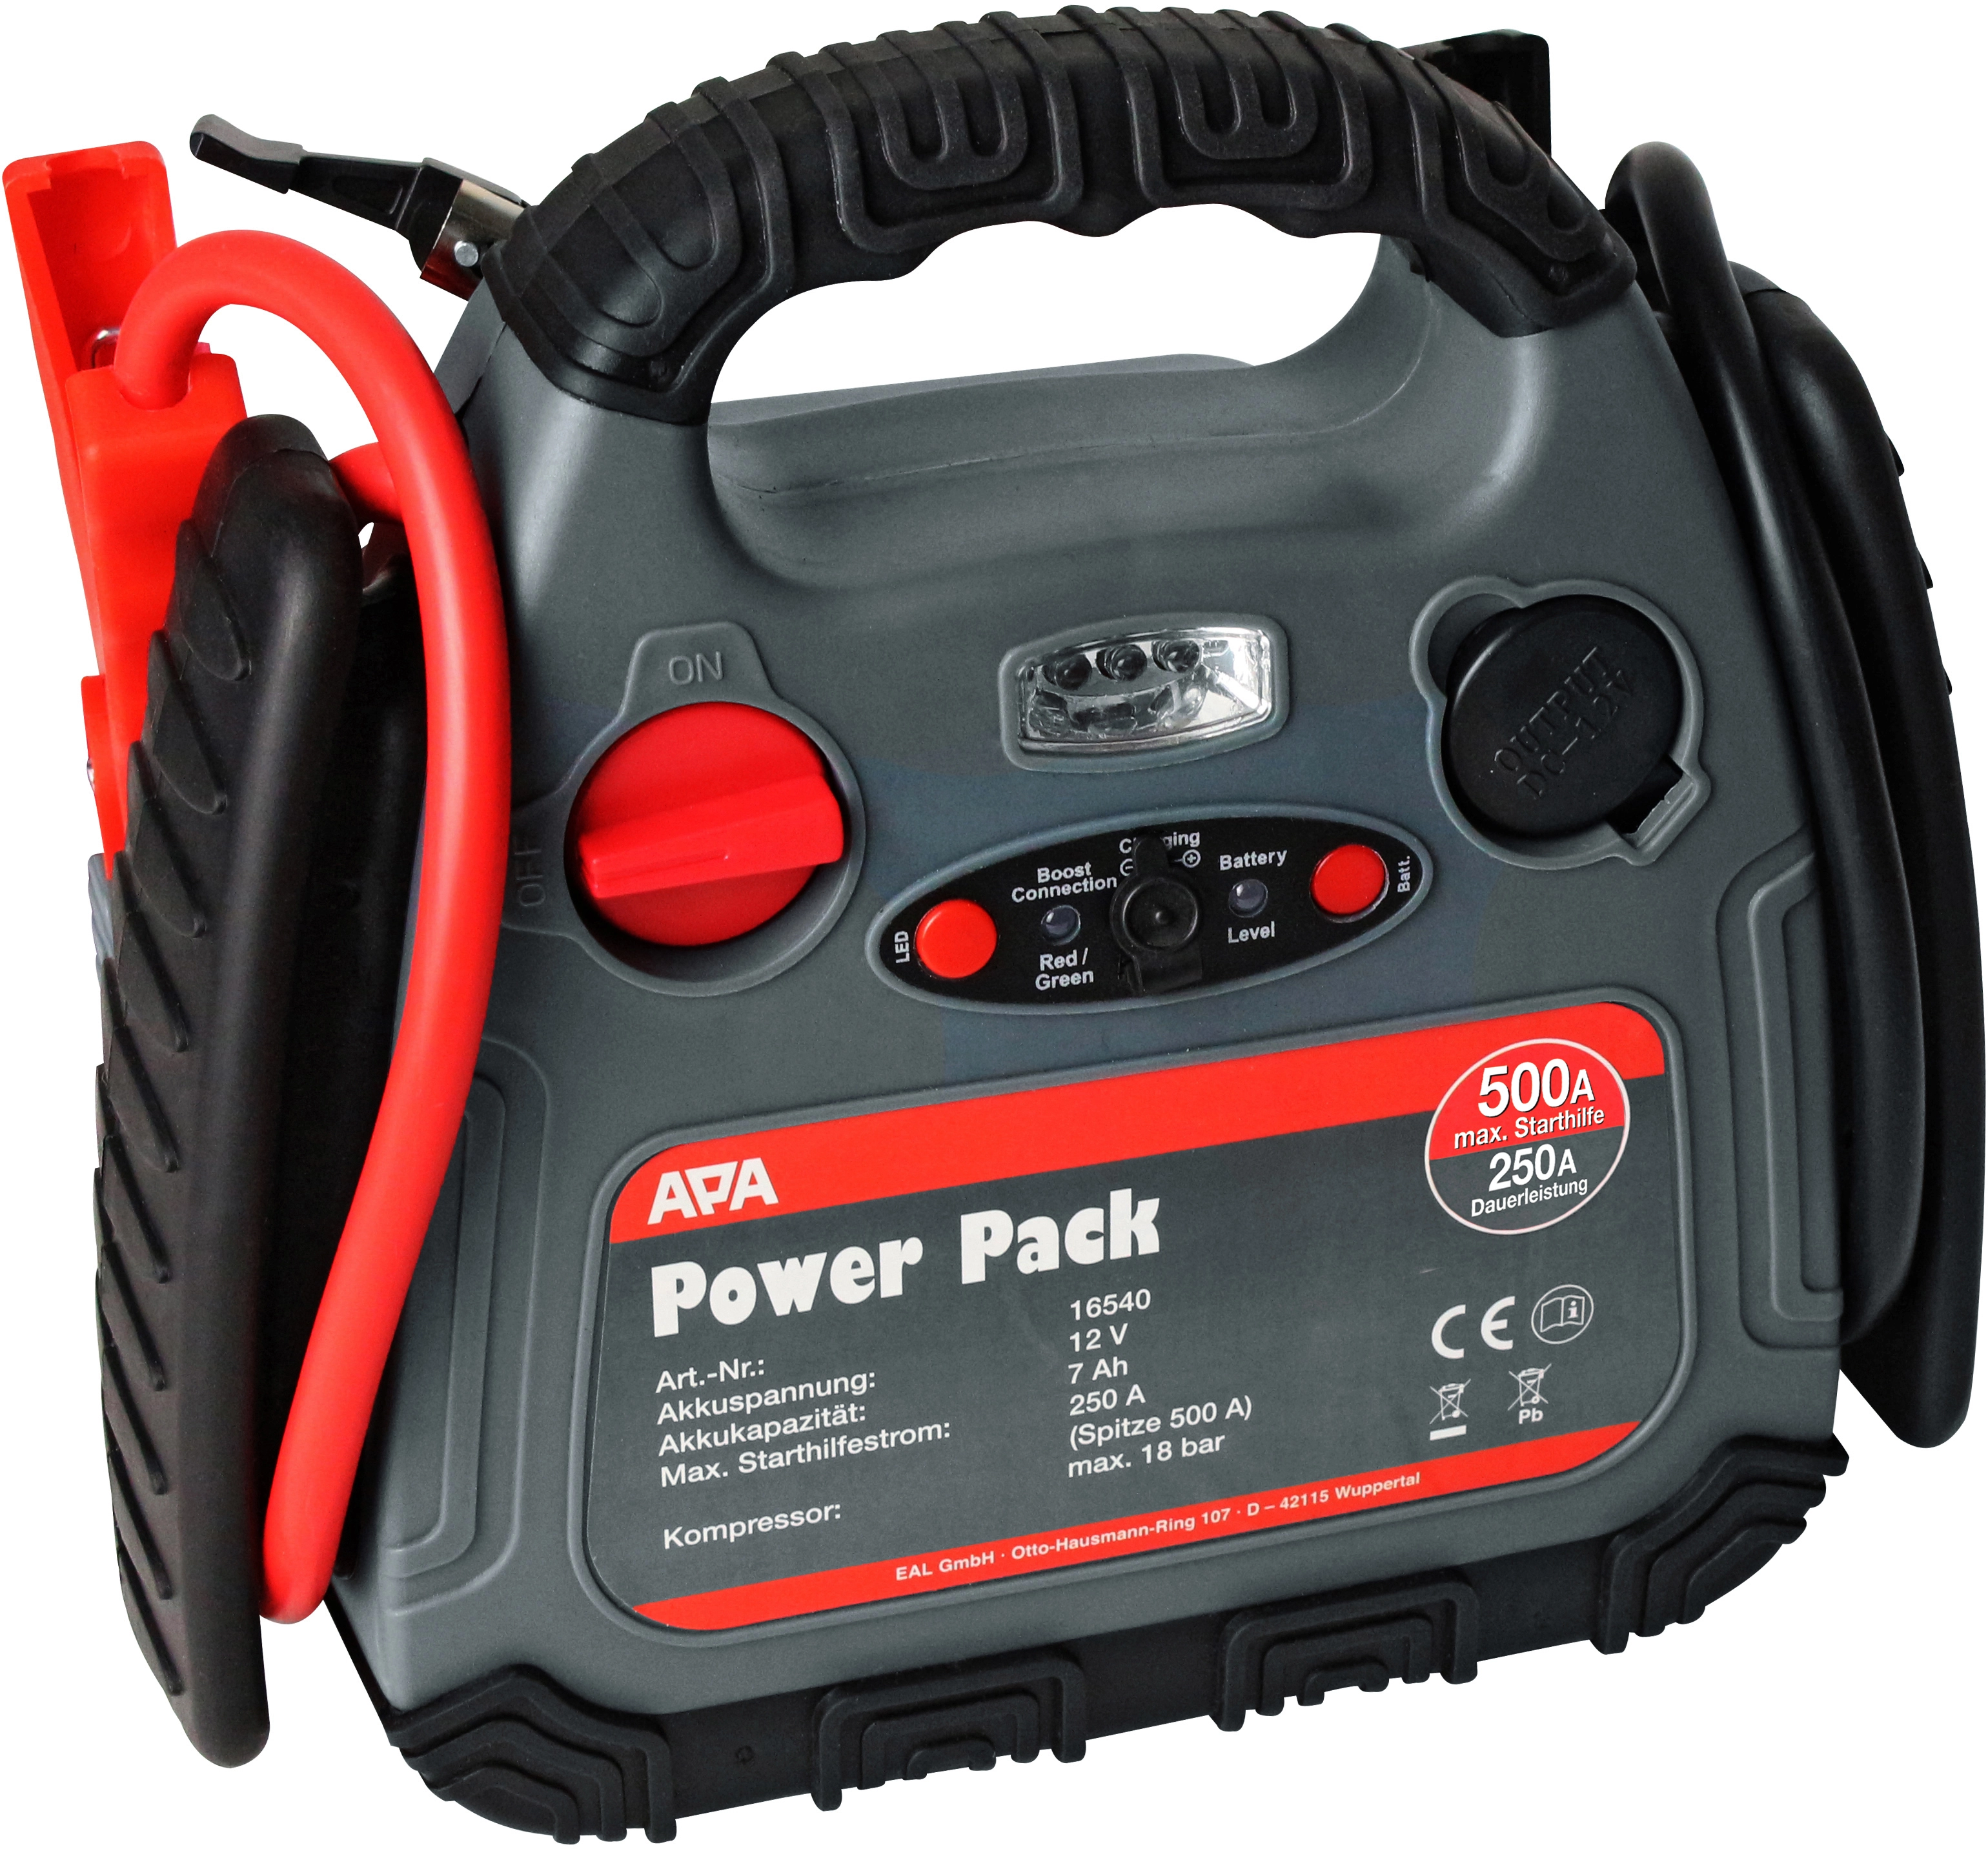 APA Starthilfe Powerpack 250 A mit Kompressor kaufen bei OBI